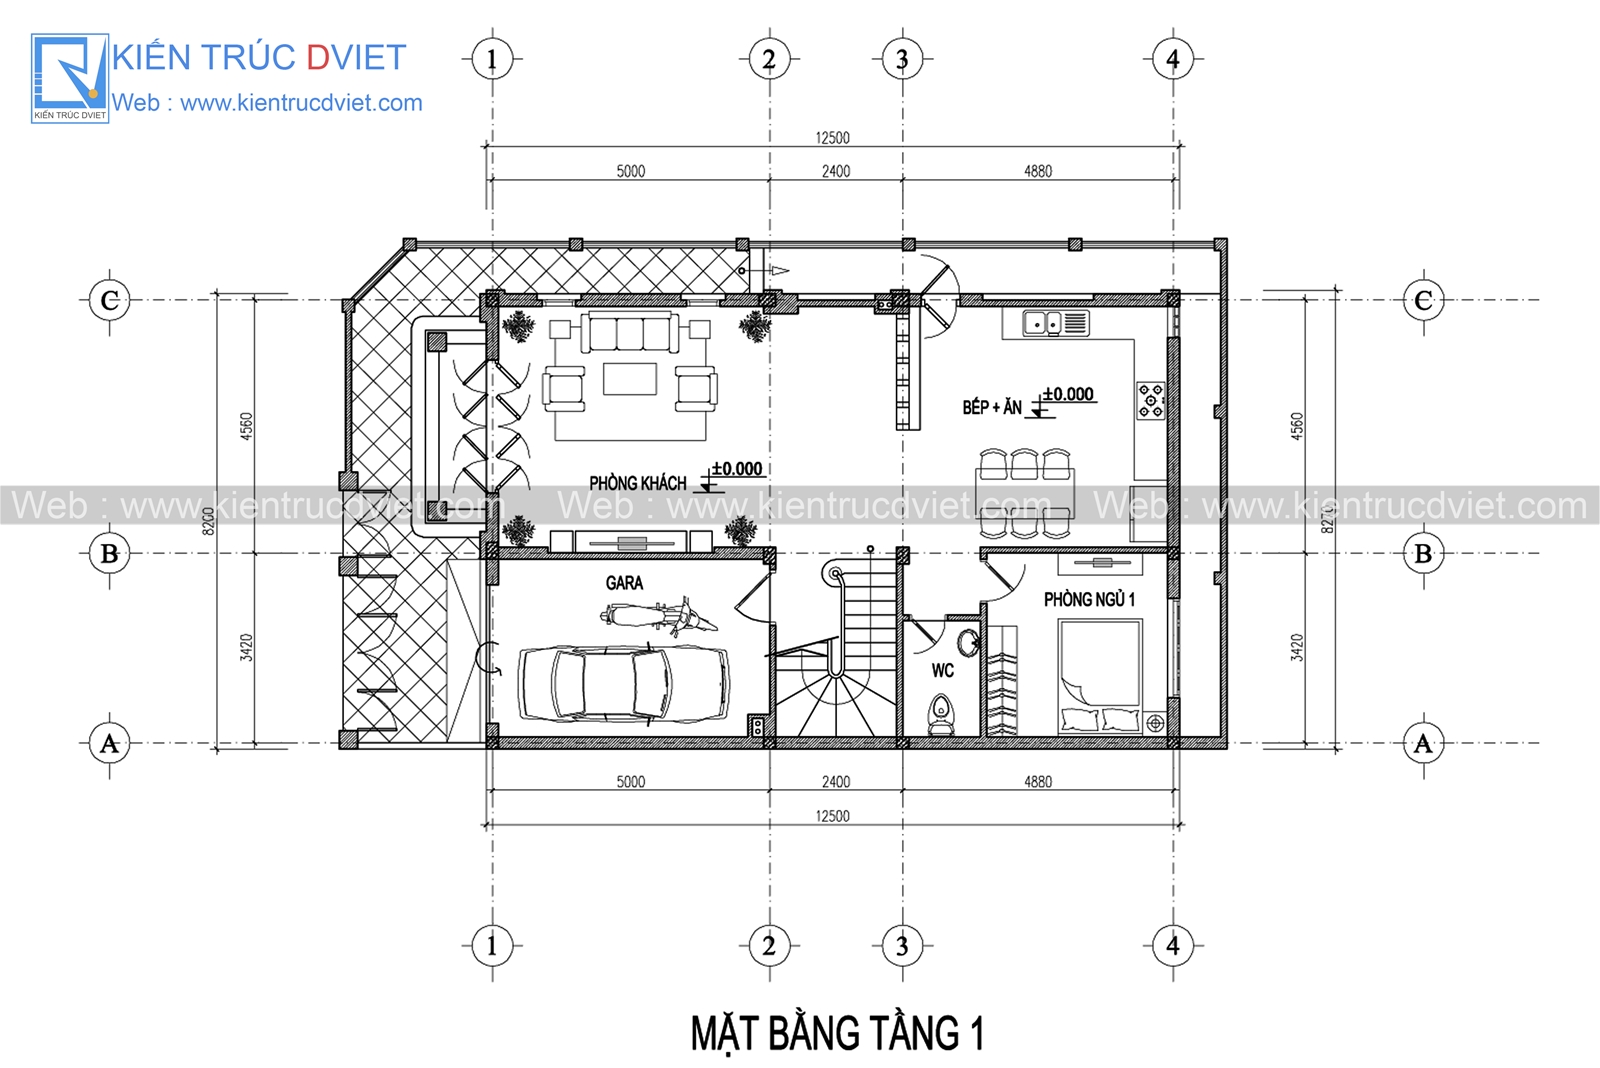 Khó rời mắt trước 6 bản vẽ thiết kế nhà 2 tầng 8x12m đẹp nức lòng  WEDO   Công ty Thiết kế Thi công xây dựng chuyên nghiệp hàng đầu Việt Nam